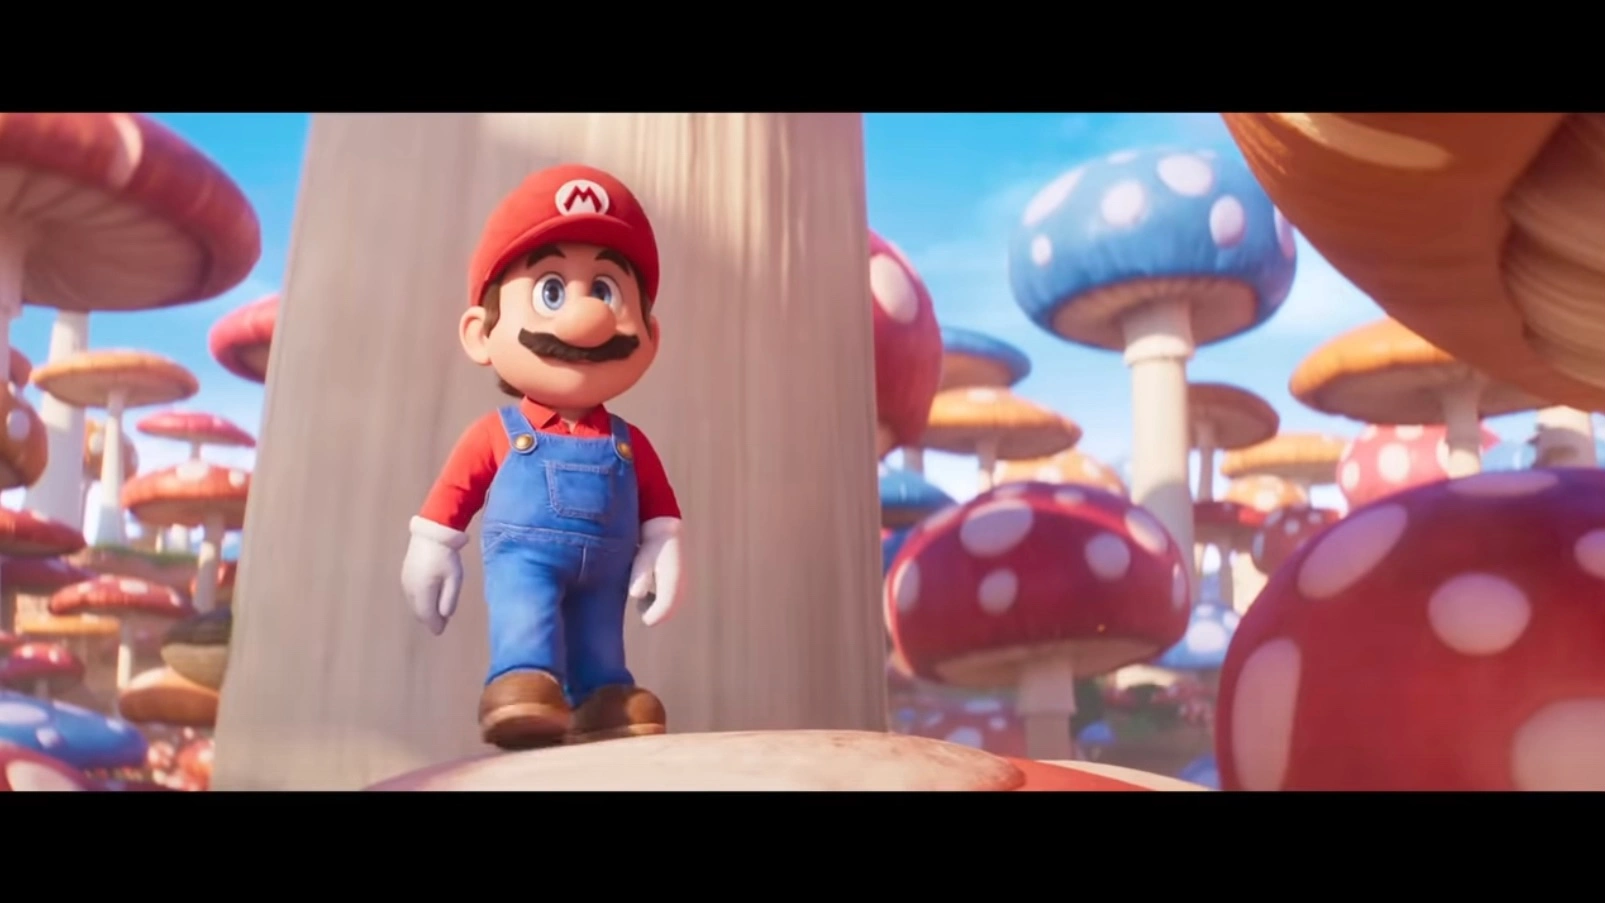 El segundo tráiler de la película de Super Mario Bros está protagonizado por la princesa Peach